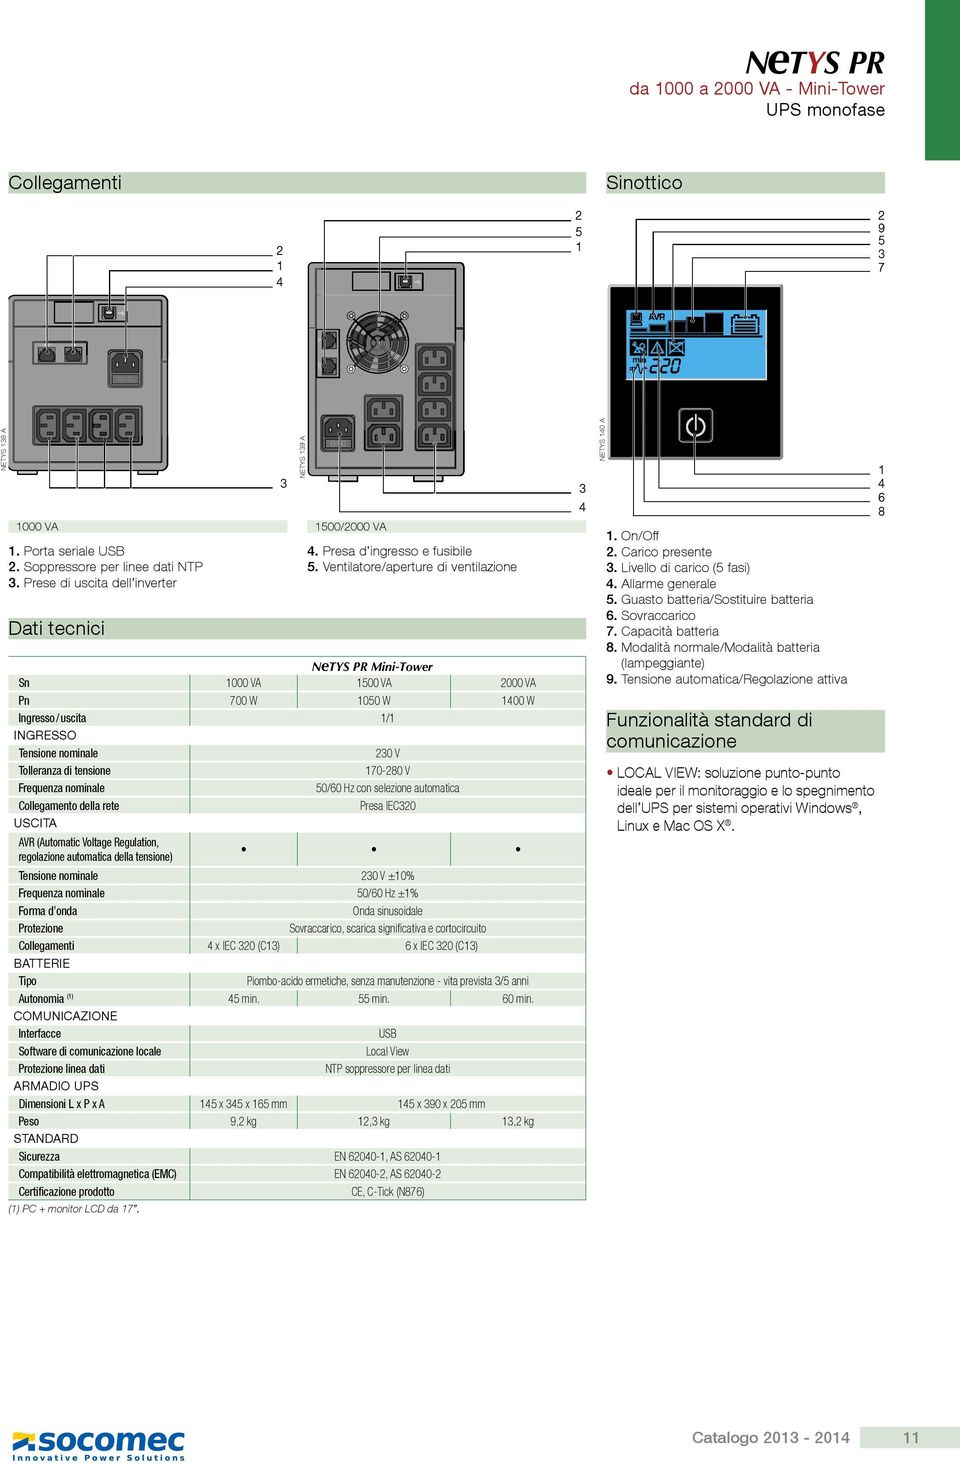 nominale 0/0 Hz con selezione automatica Collegamento della rete Presa IEC0 USCITA AVR (Automatic Voltage Regulation, regolazione automatica della tensione) Tensione nominale 0 V ±0% Frequenza